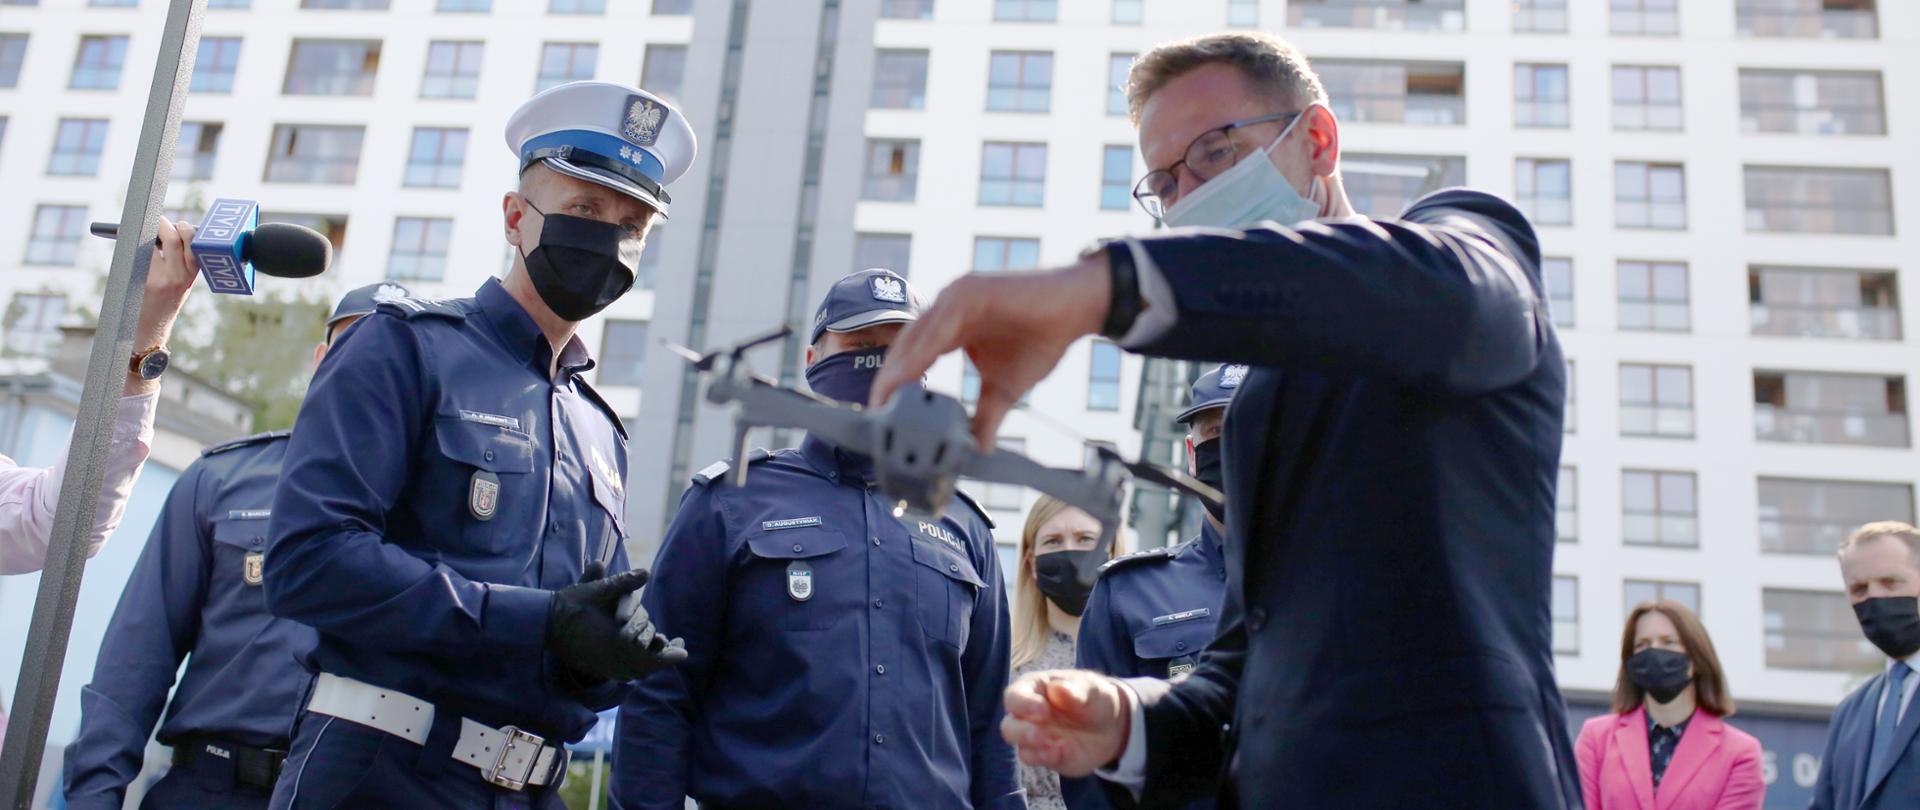 wiceminister Waldemar Buda trzyma w ręce drona, o którego zastosowaniu mówią policjanci ruchu drogowego